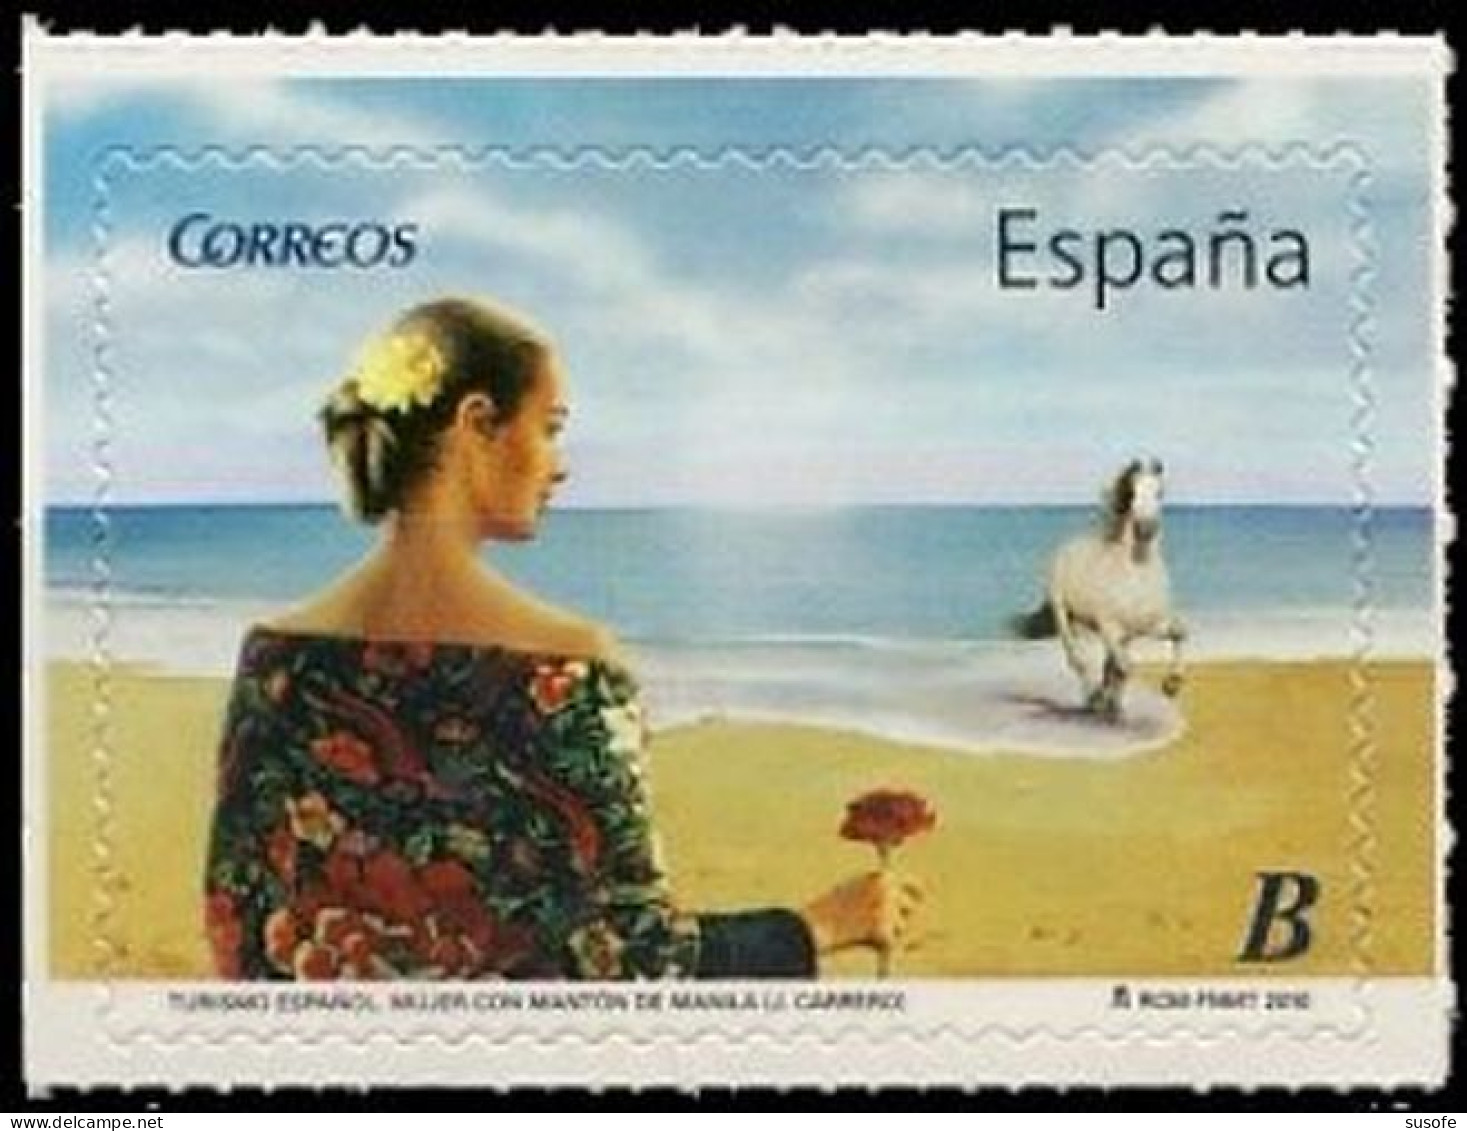 España 2010 Edifil 4532 Sello ** Turismo Mujer Con Mantón De Manila  (J. Carrero) Spain Stamps Timbre Espagne Briefmarke - Ungebraucht